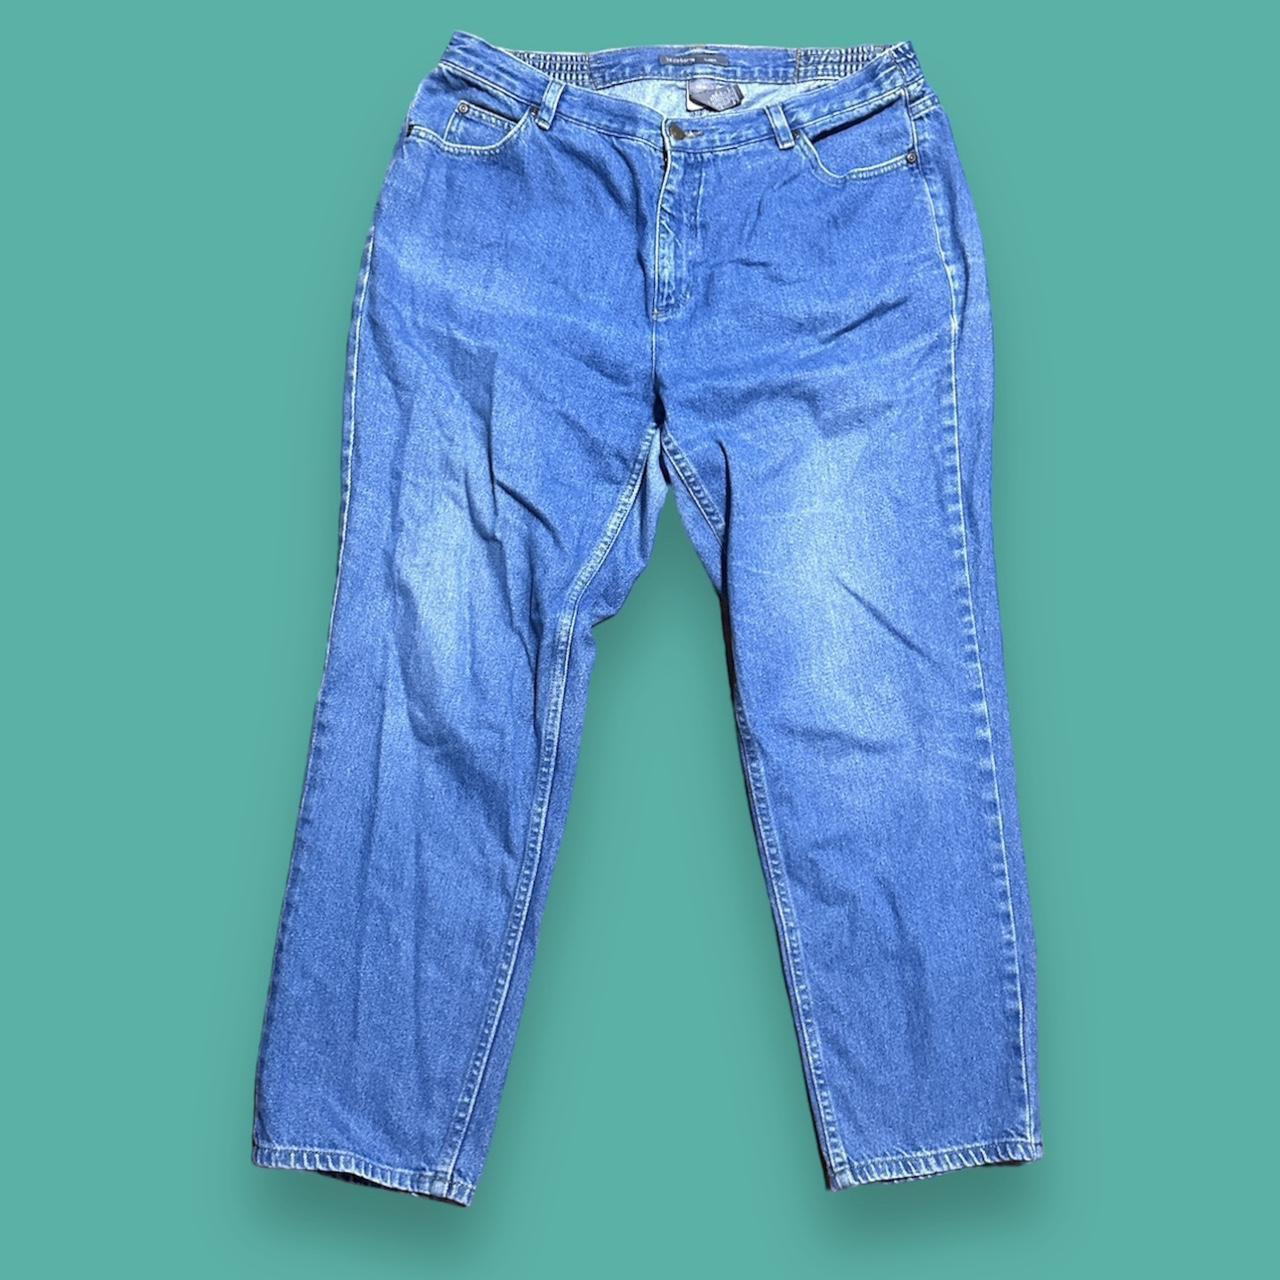 Vintage 80s Mom Jeans Medium Wash Blue Denim Size - Depop